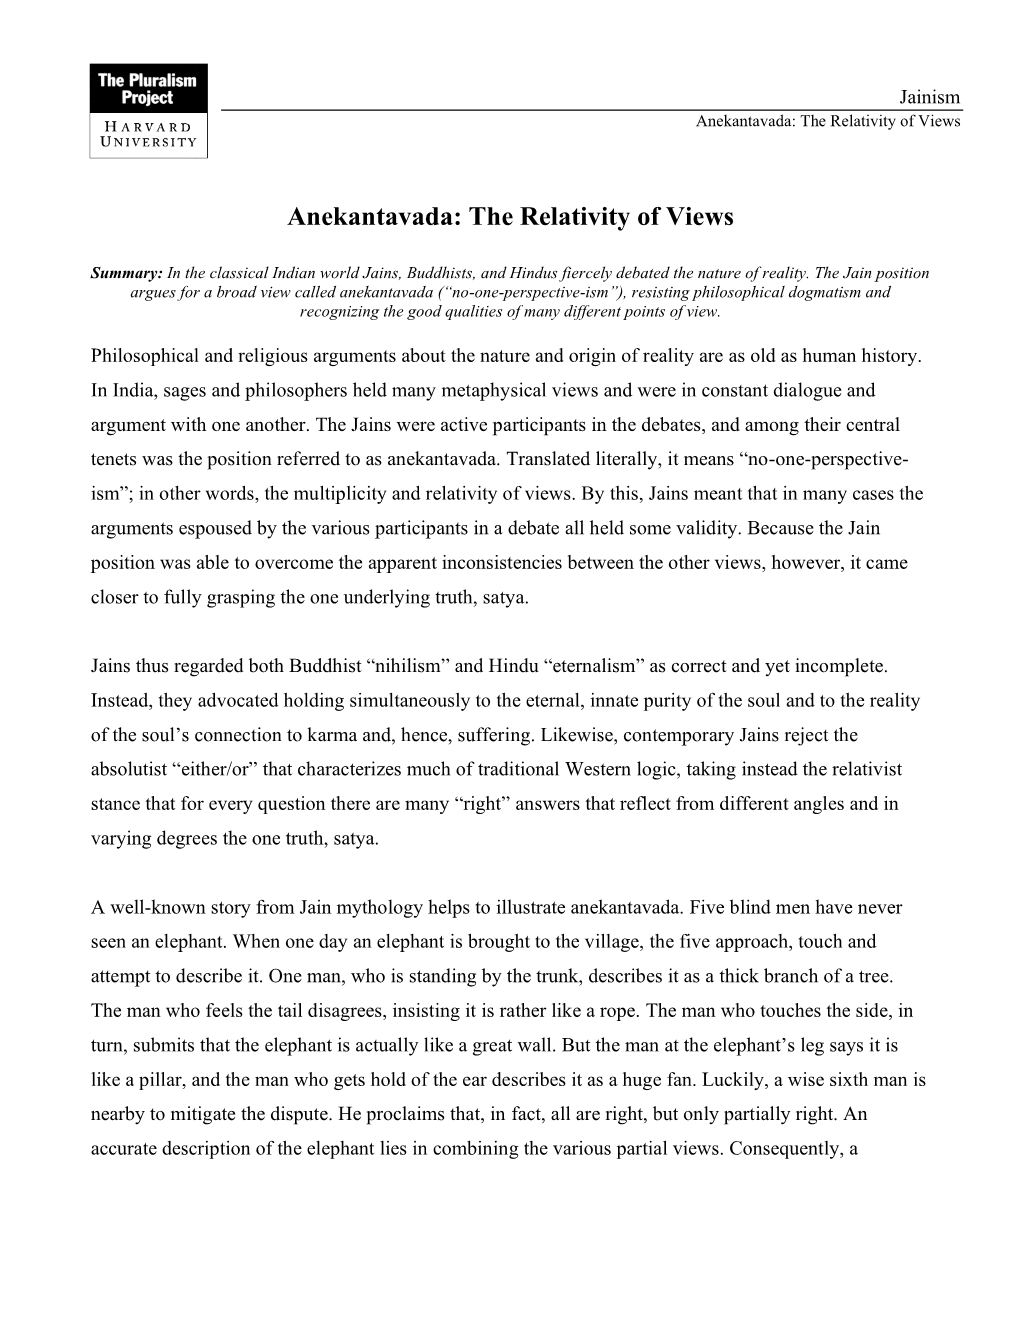 Anekantavada: the Relativity of Views